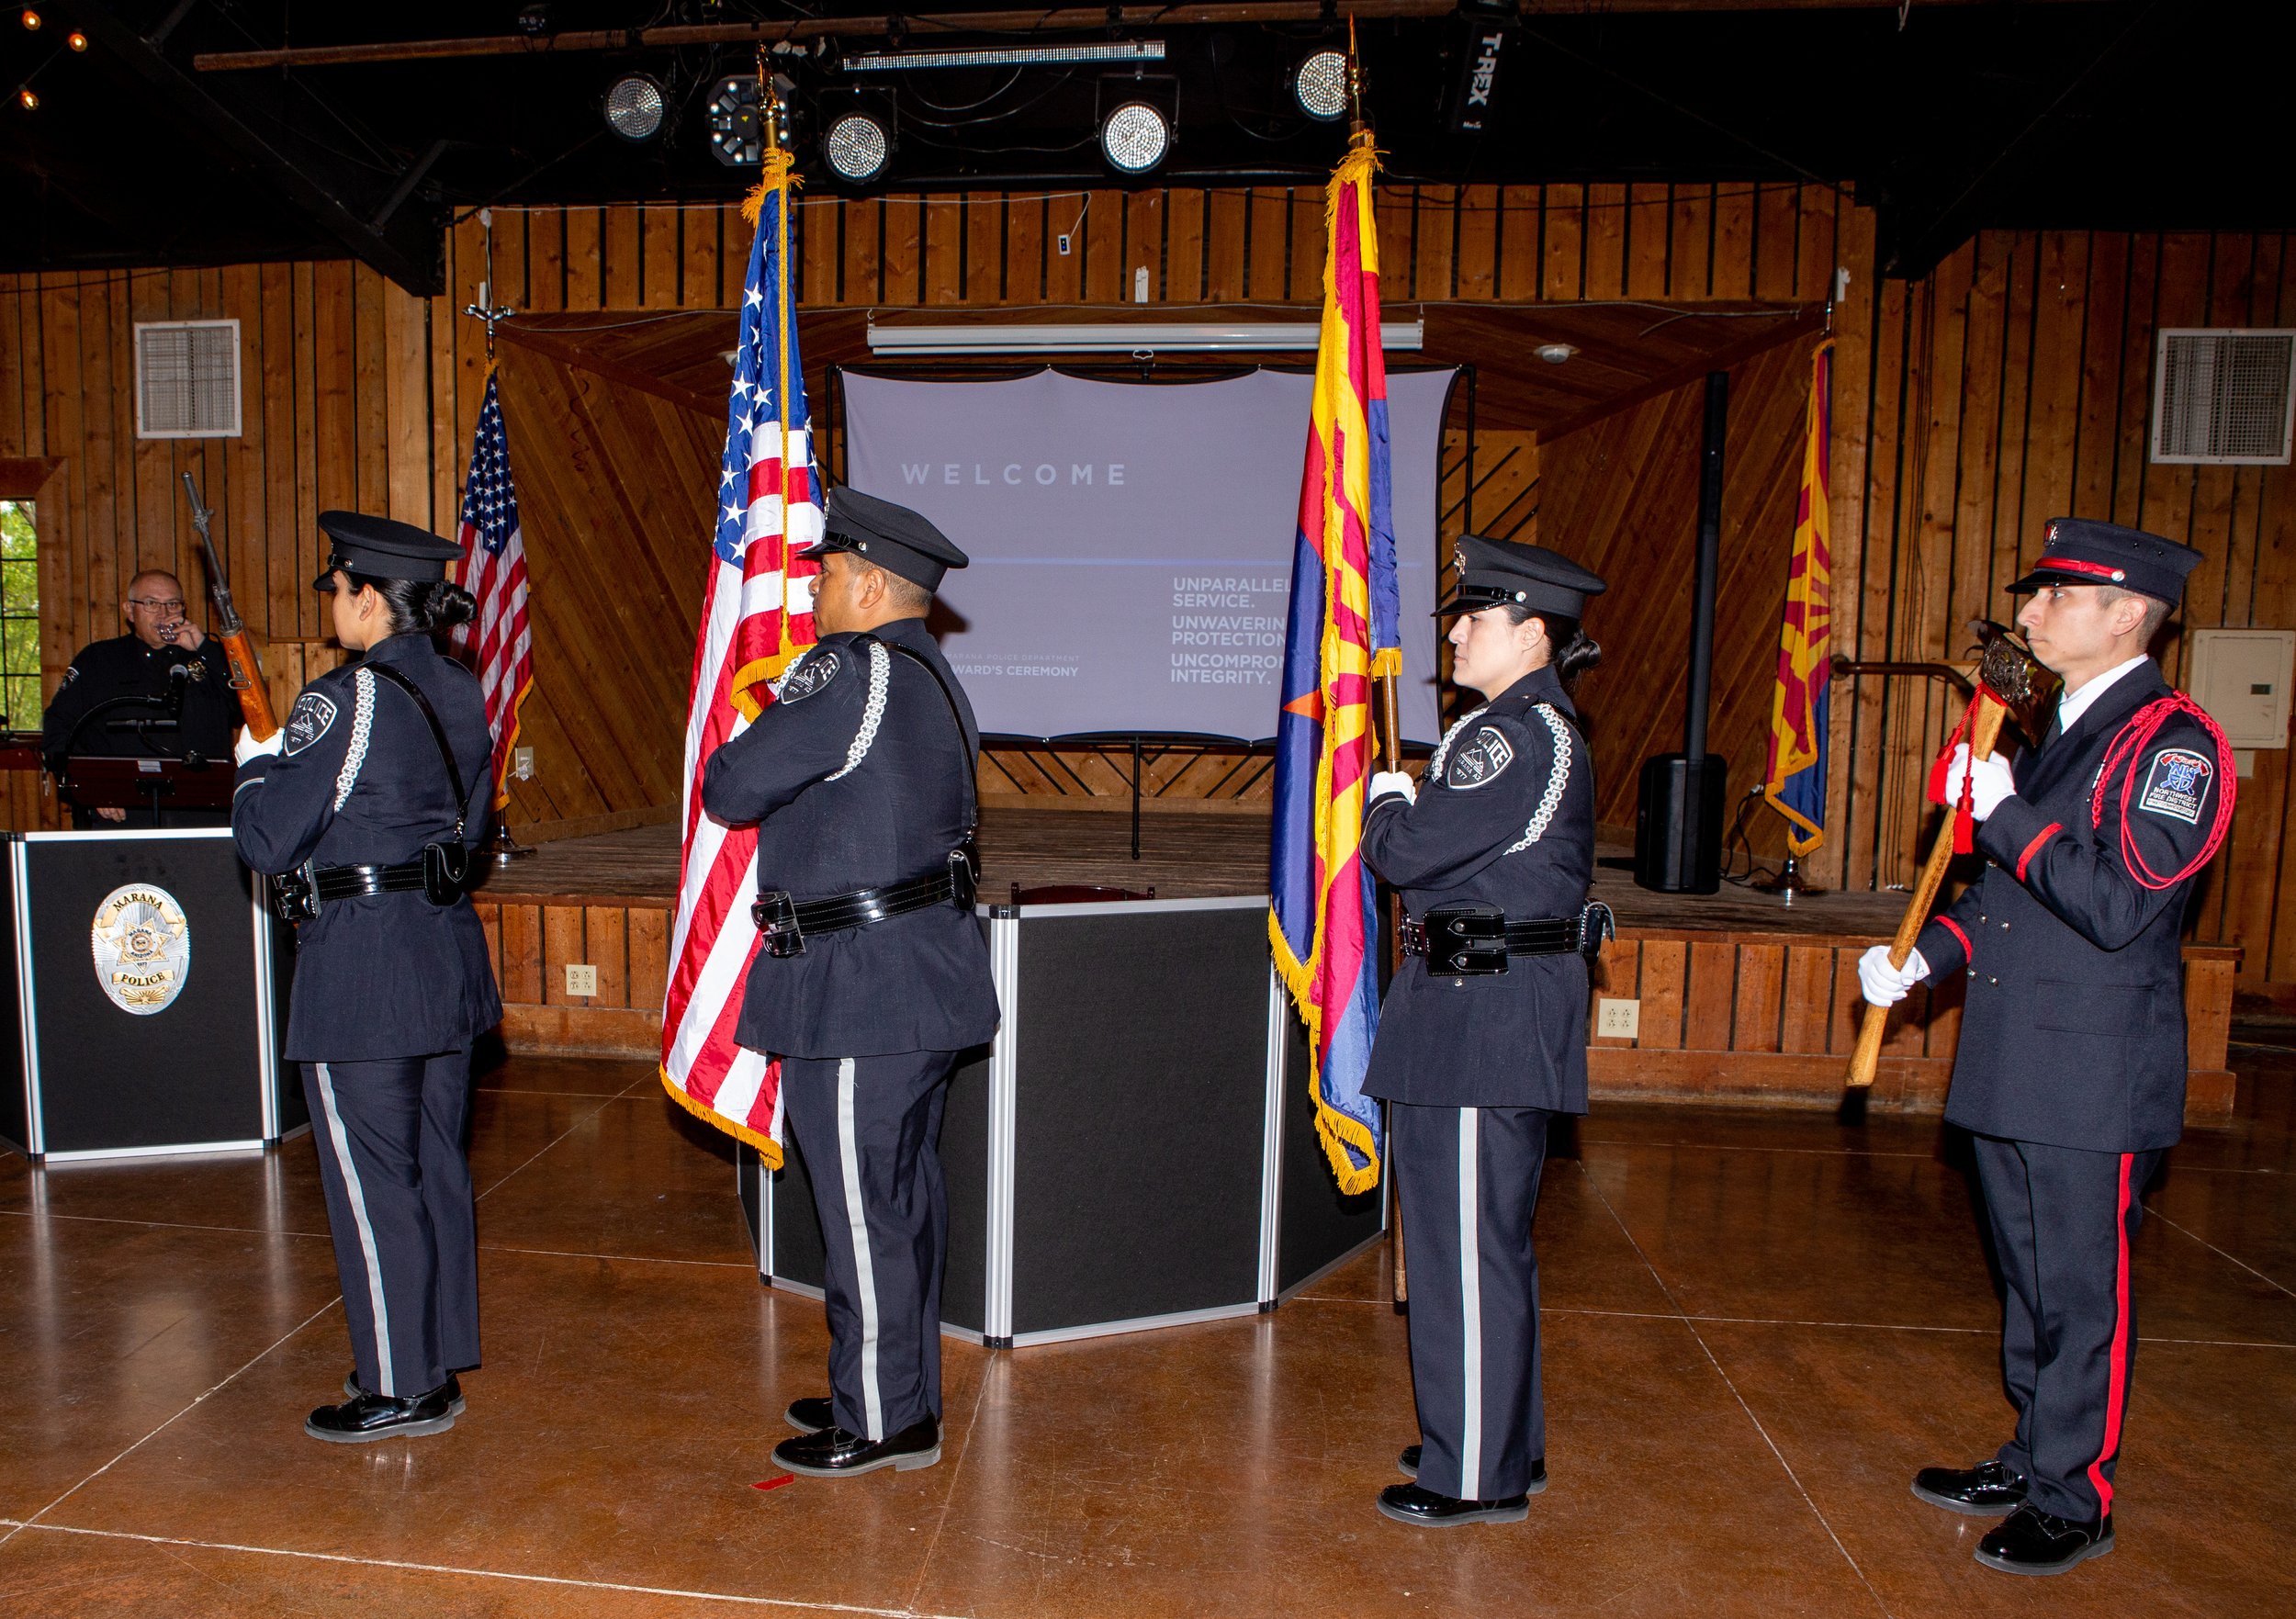  MPD Honor Guard presentation of colors 